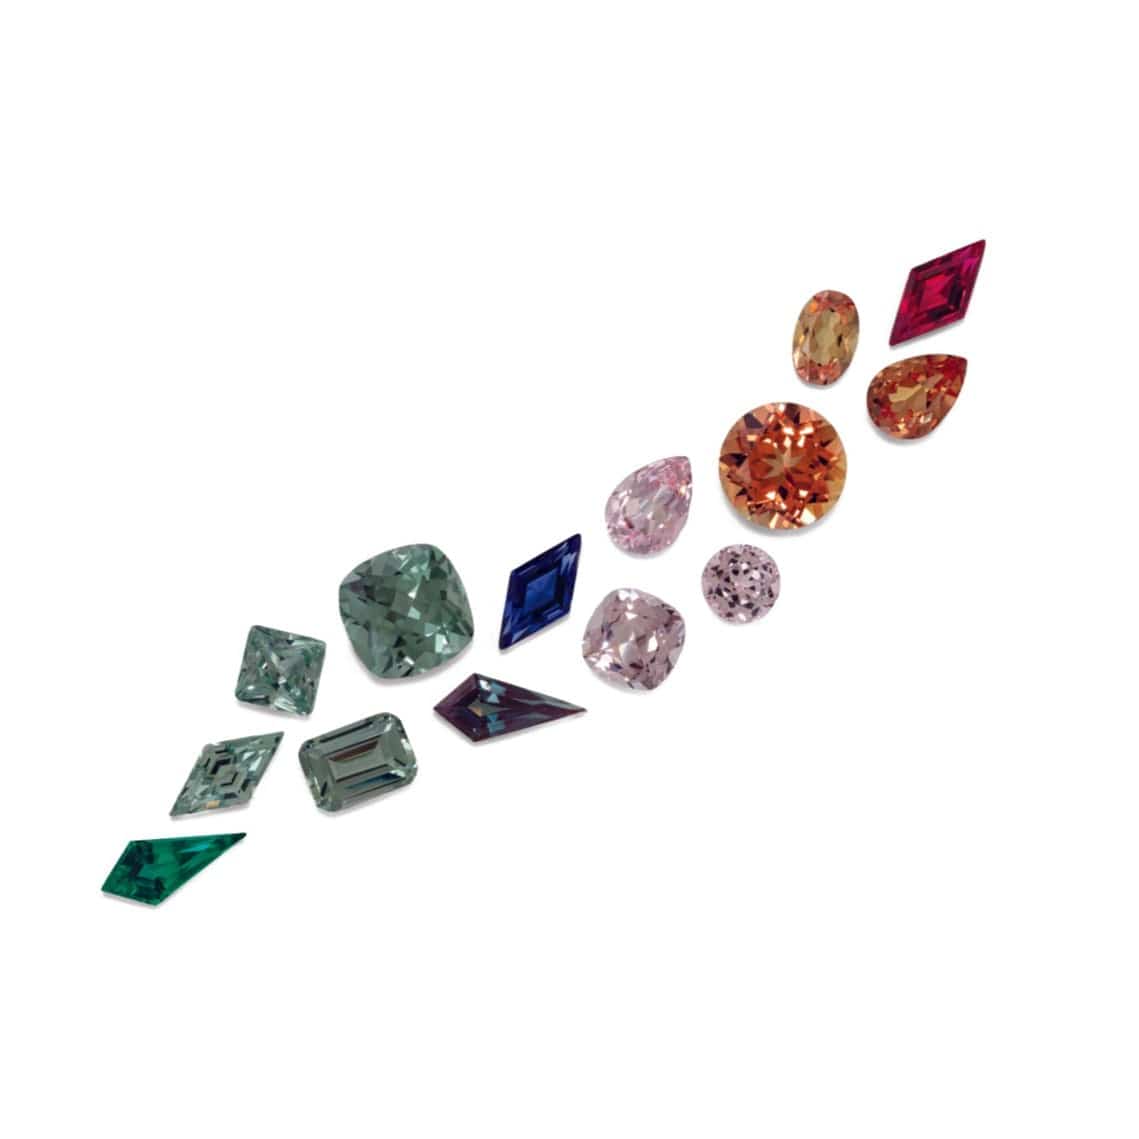 Emerald Cut Lab Created Green Sapphire Gemstone Loose Gemstone by Nodeform